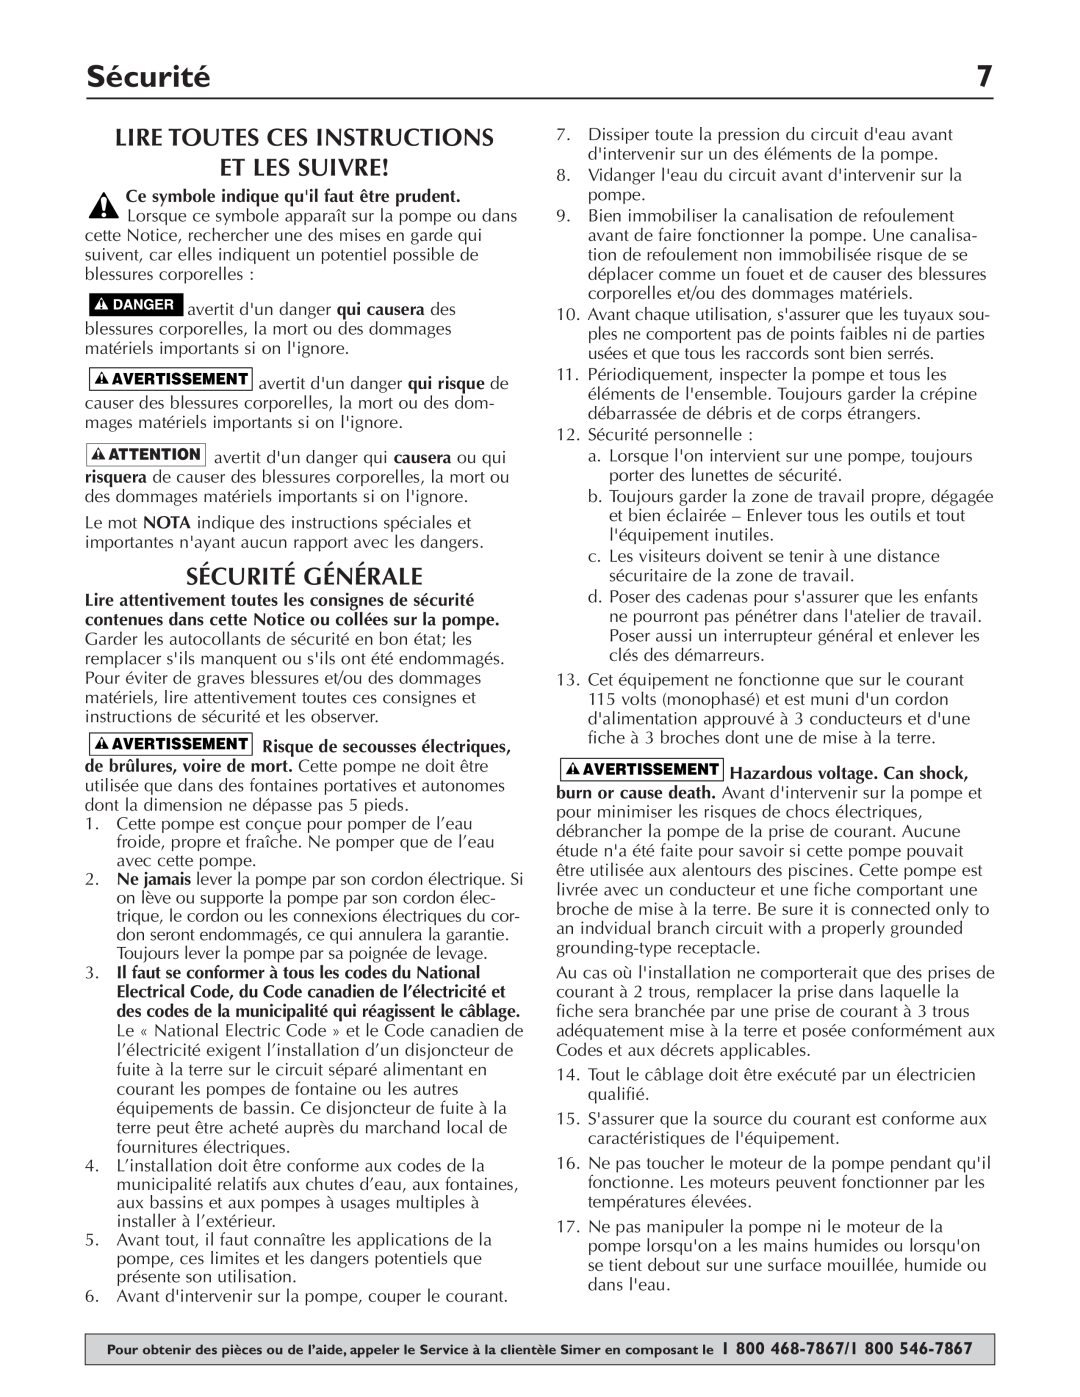 Simer Pumps 2430 owner manual Lire Toutes Ces Instructions Et Les Suivre, Sécurité Générale 